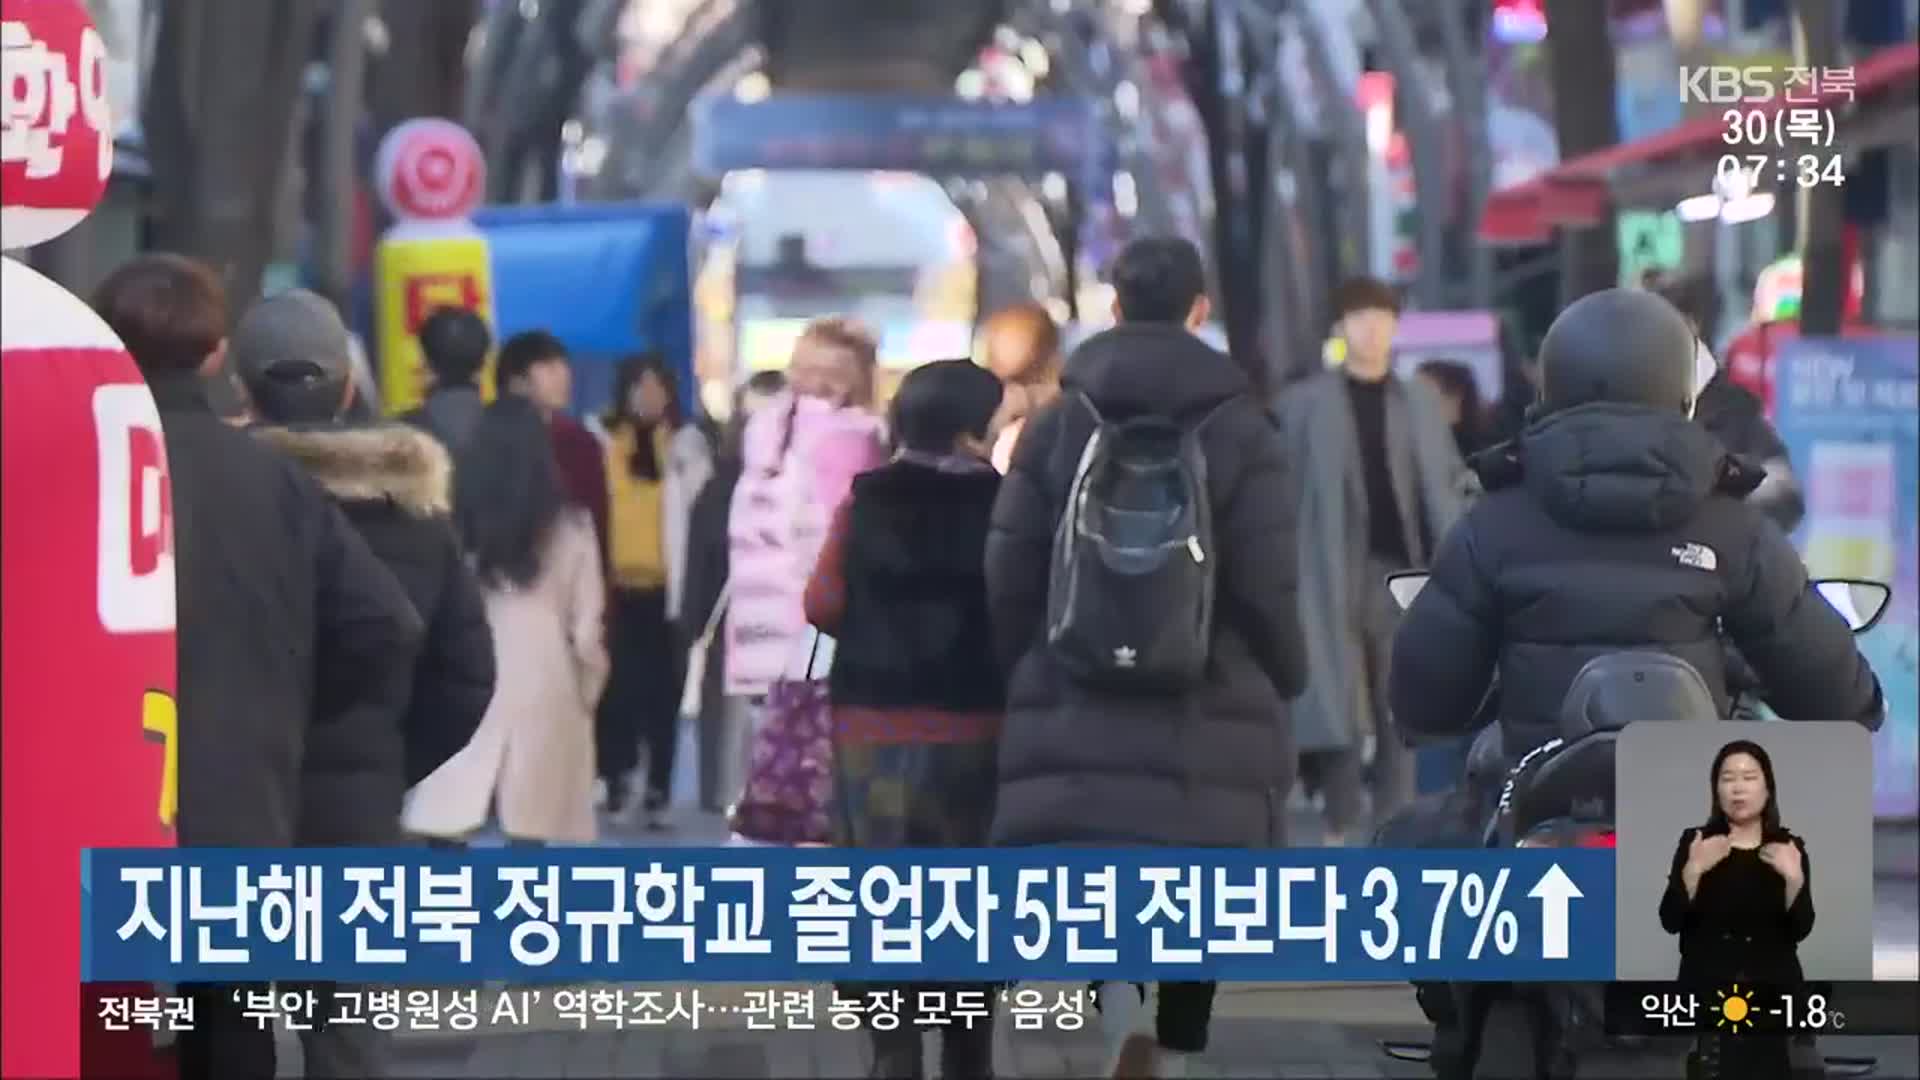 지난해 전북 정규학교 졸업자 5년 전보다 3.7%↑